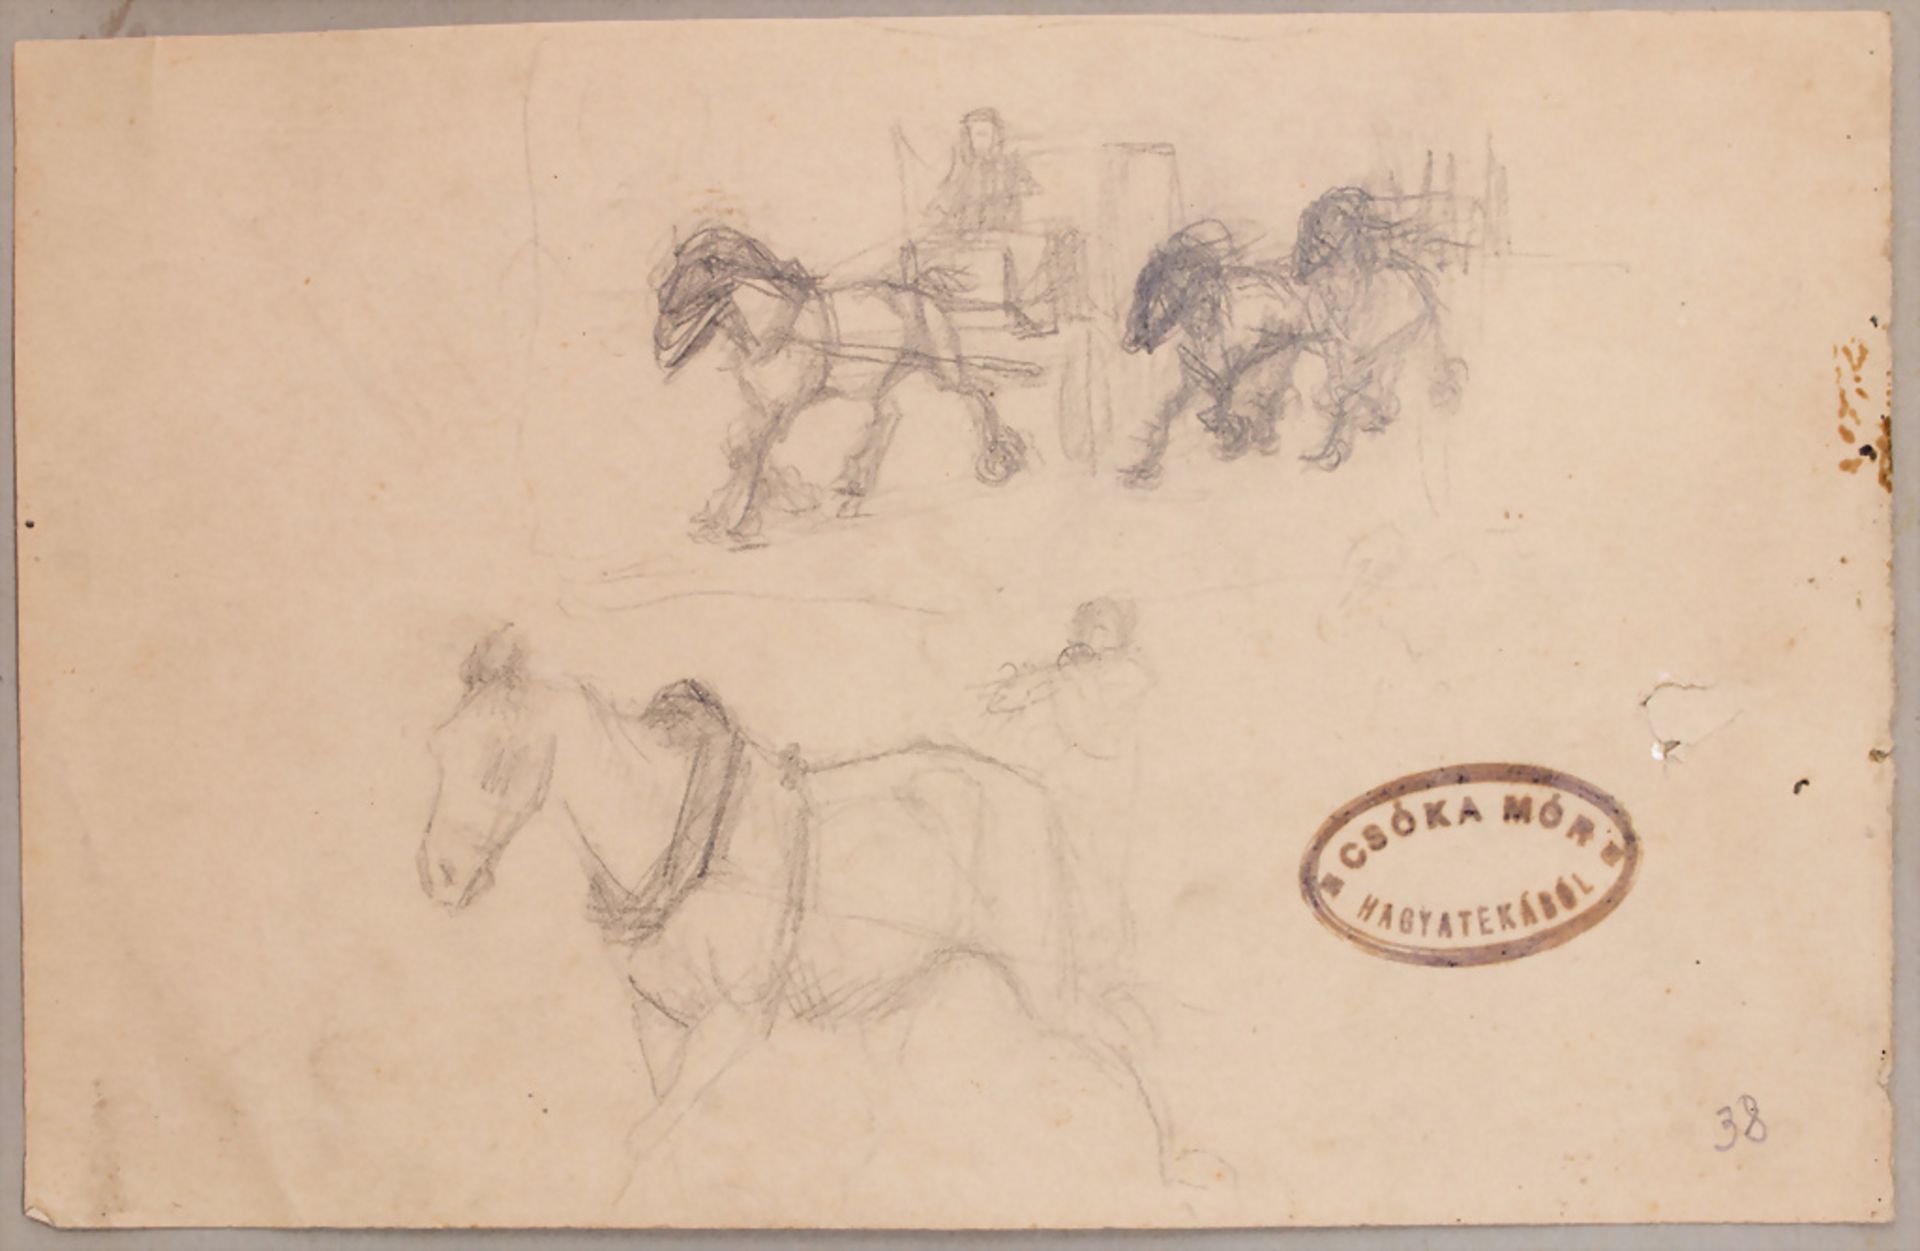 Csóka Mór (1895-?), Skizzenblatt 'Pferde' / A sketch sheet 'Horses'